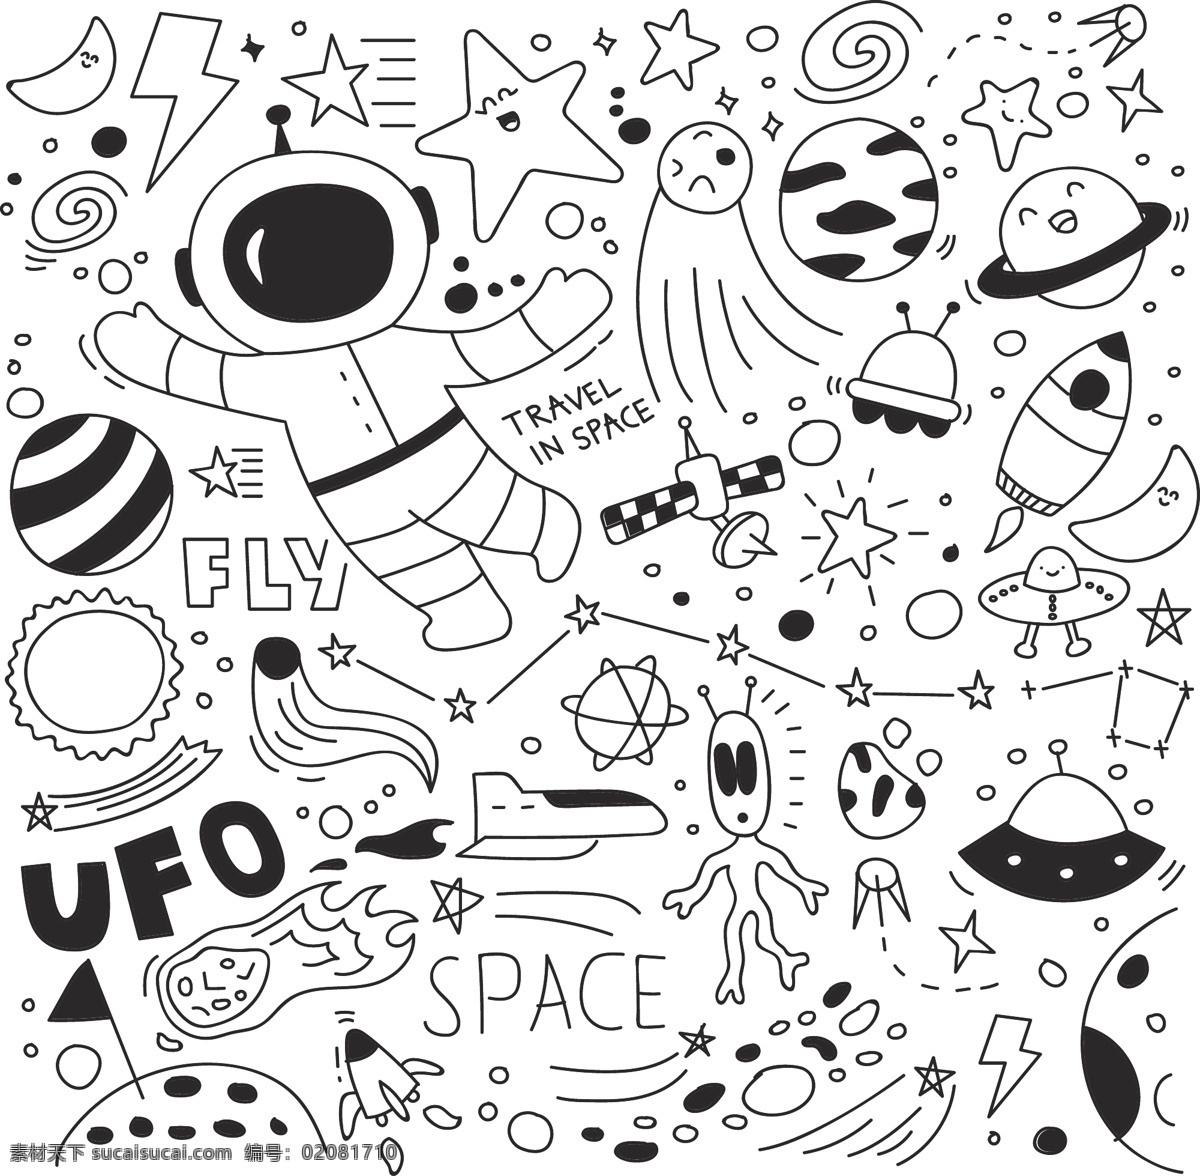 线描 宇航员 太空 元素 太空涂鸦 矢量太空图 线描太空元素 星球 星际 ufo 外星人 飞碟 太空人 星星 宇宙太空 招贴设计